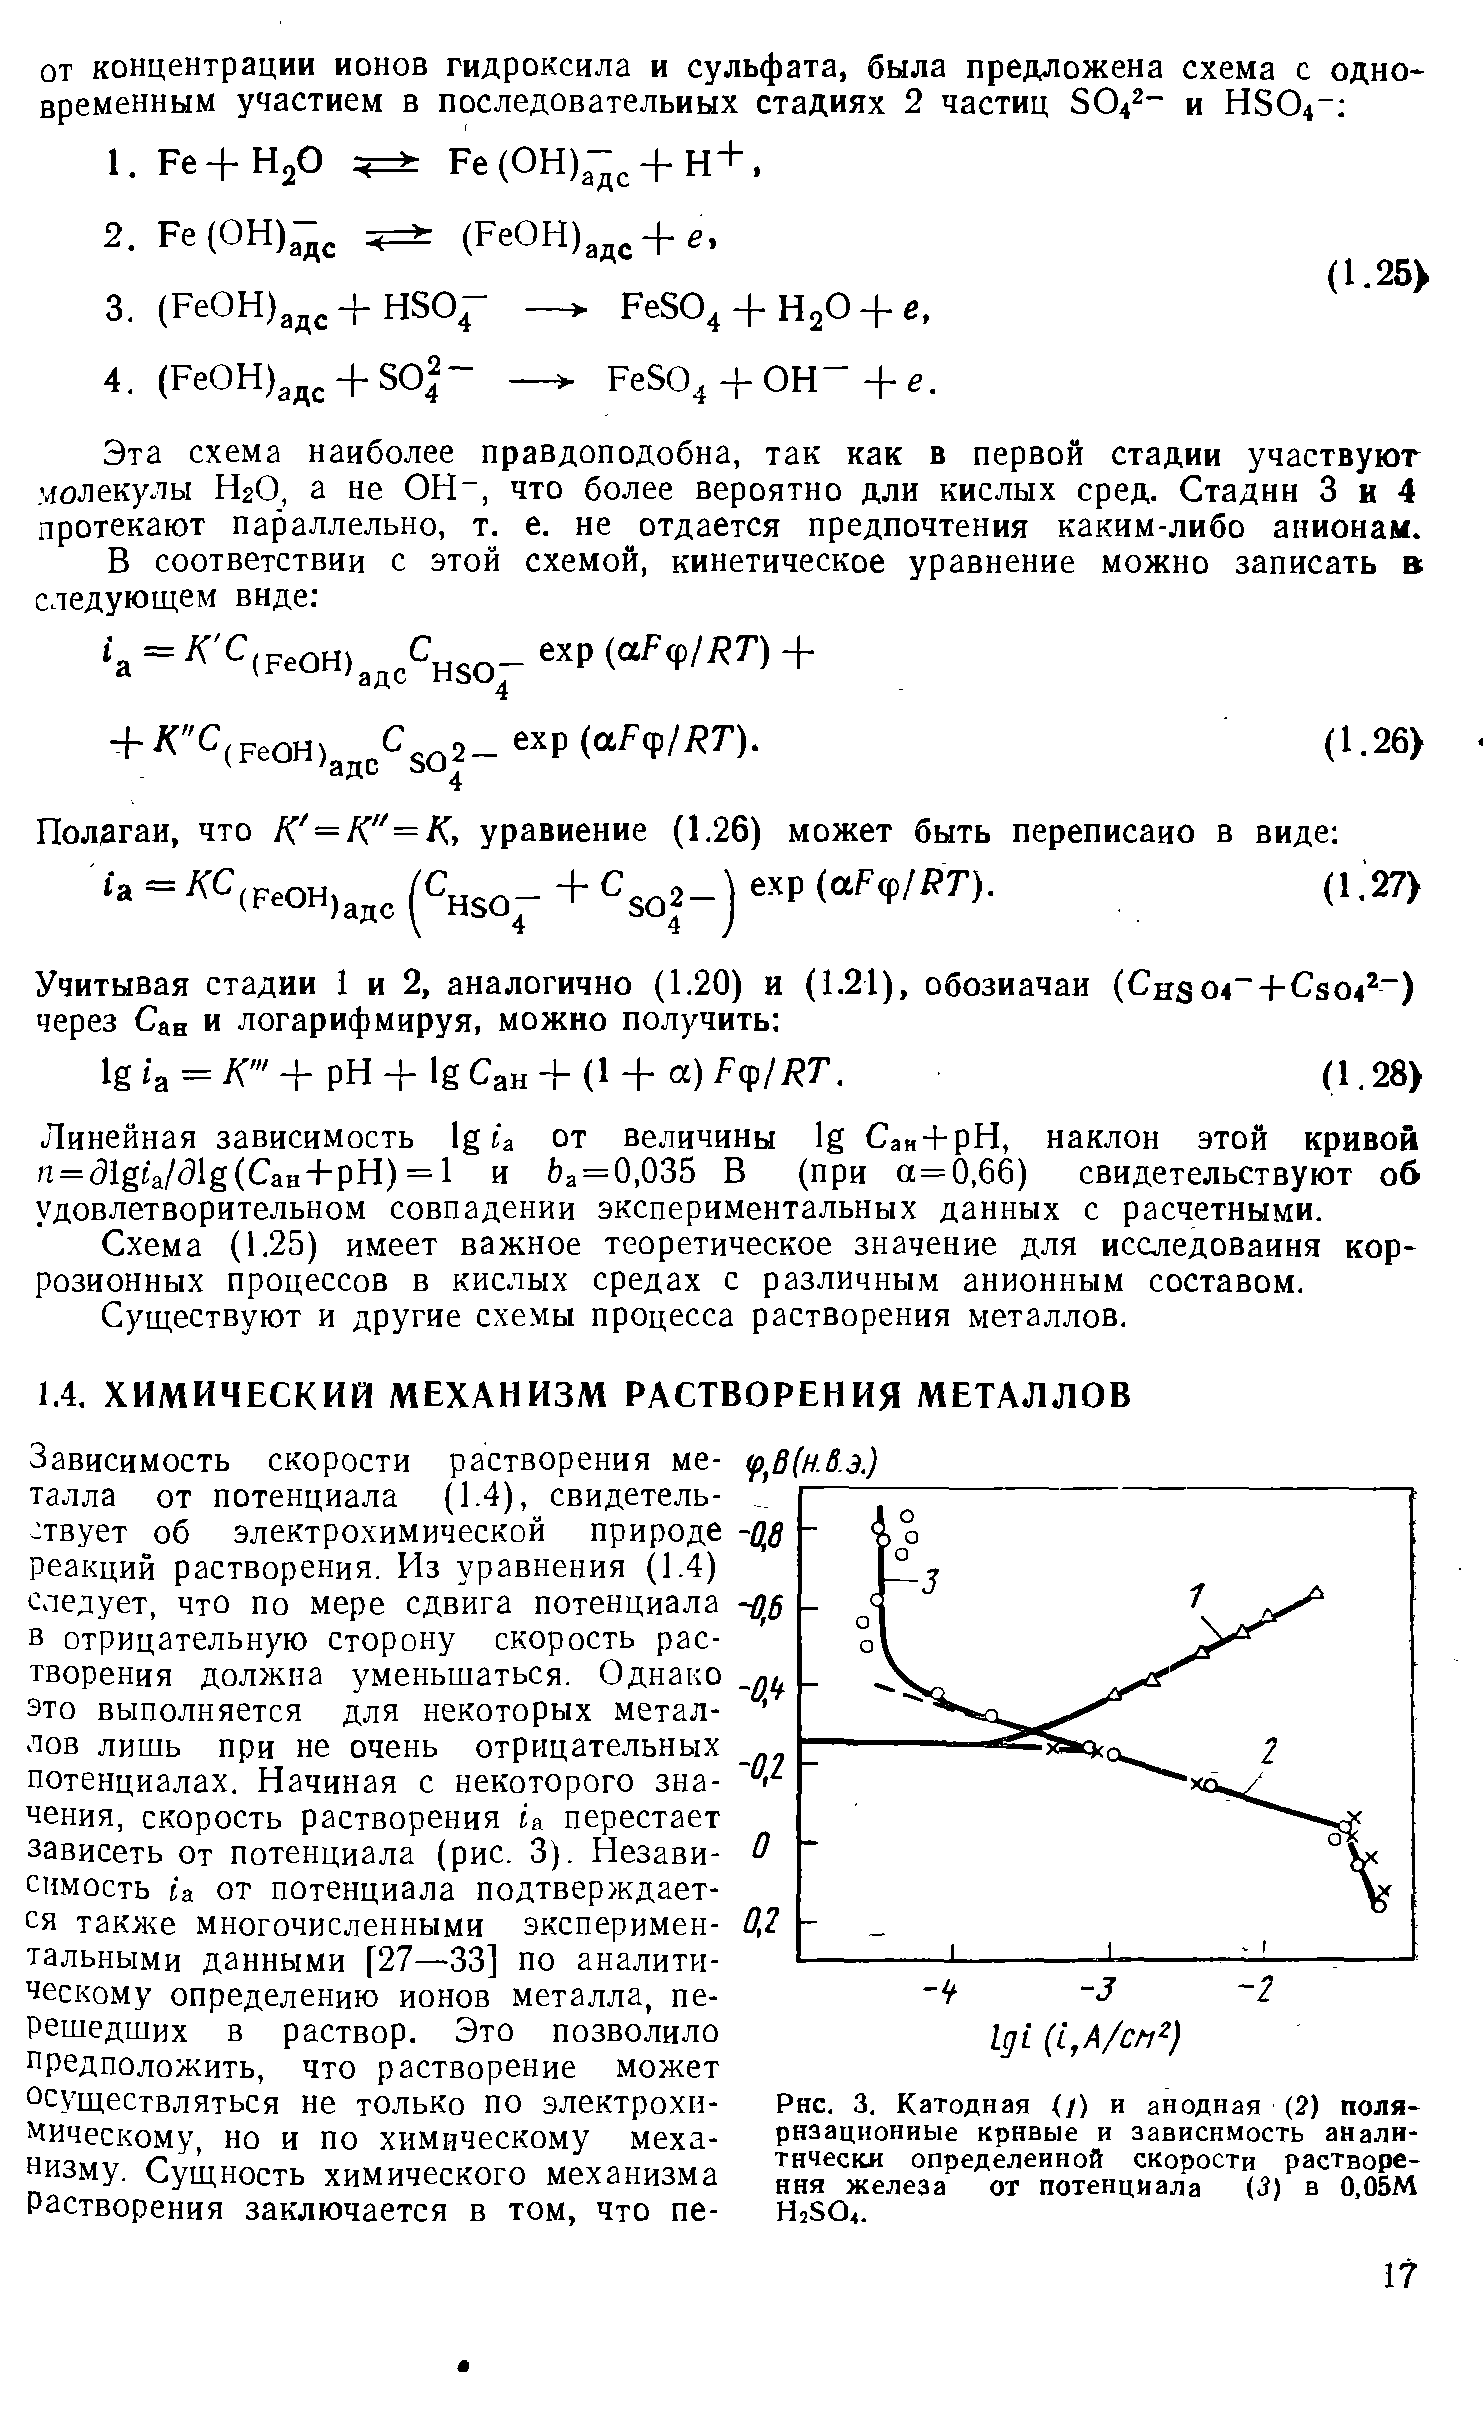 Катодная /) и анодная (2) поляризационные кривые и зависимость аналн-тичес1Ш определенной скорости растворения железа от потенциала (3) в 0.05М Н,50,.